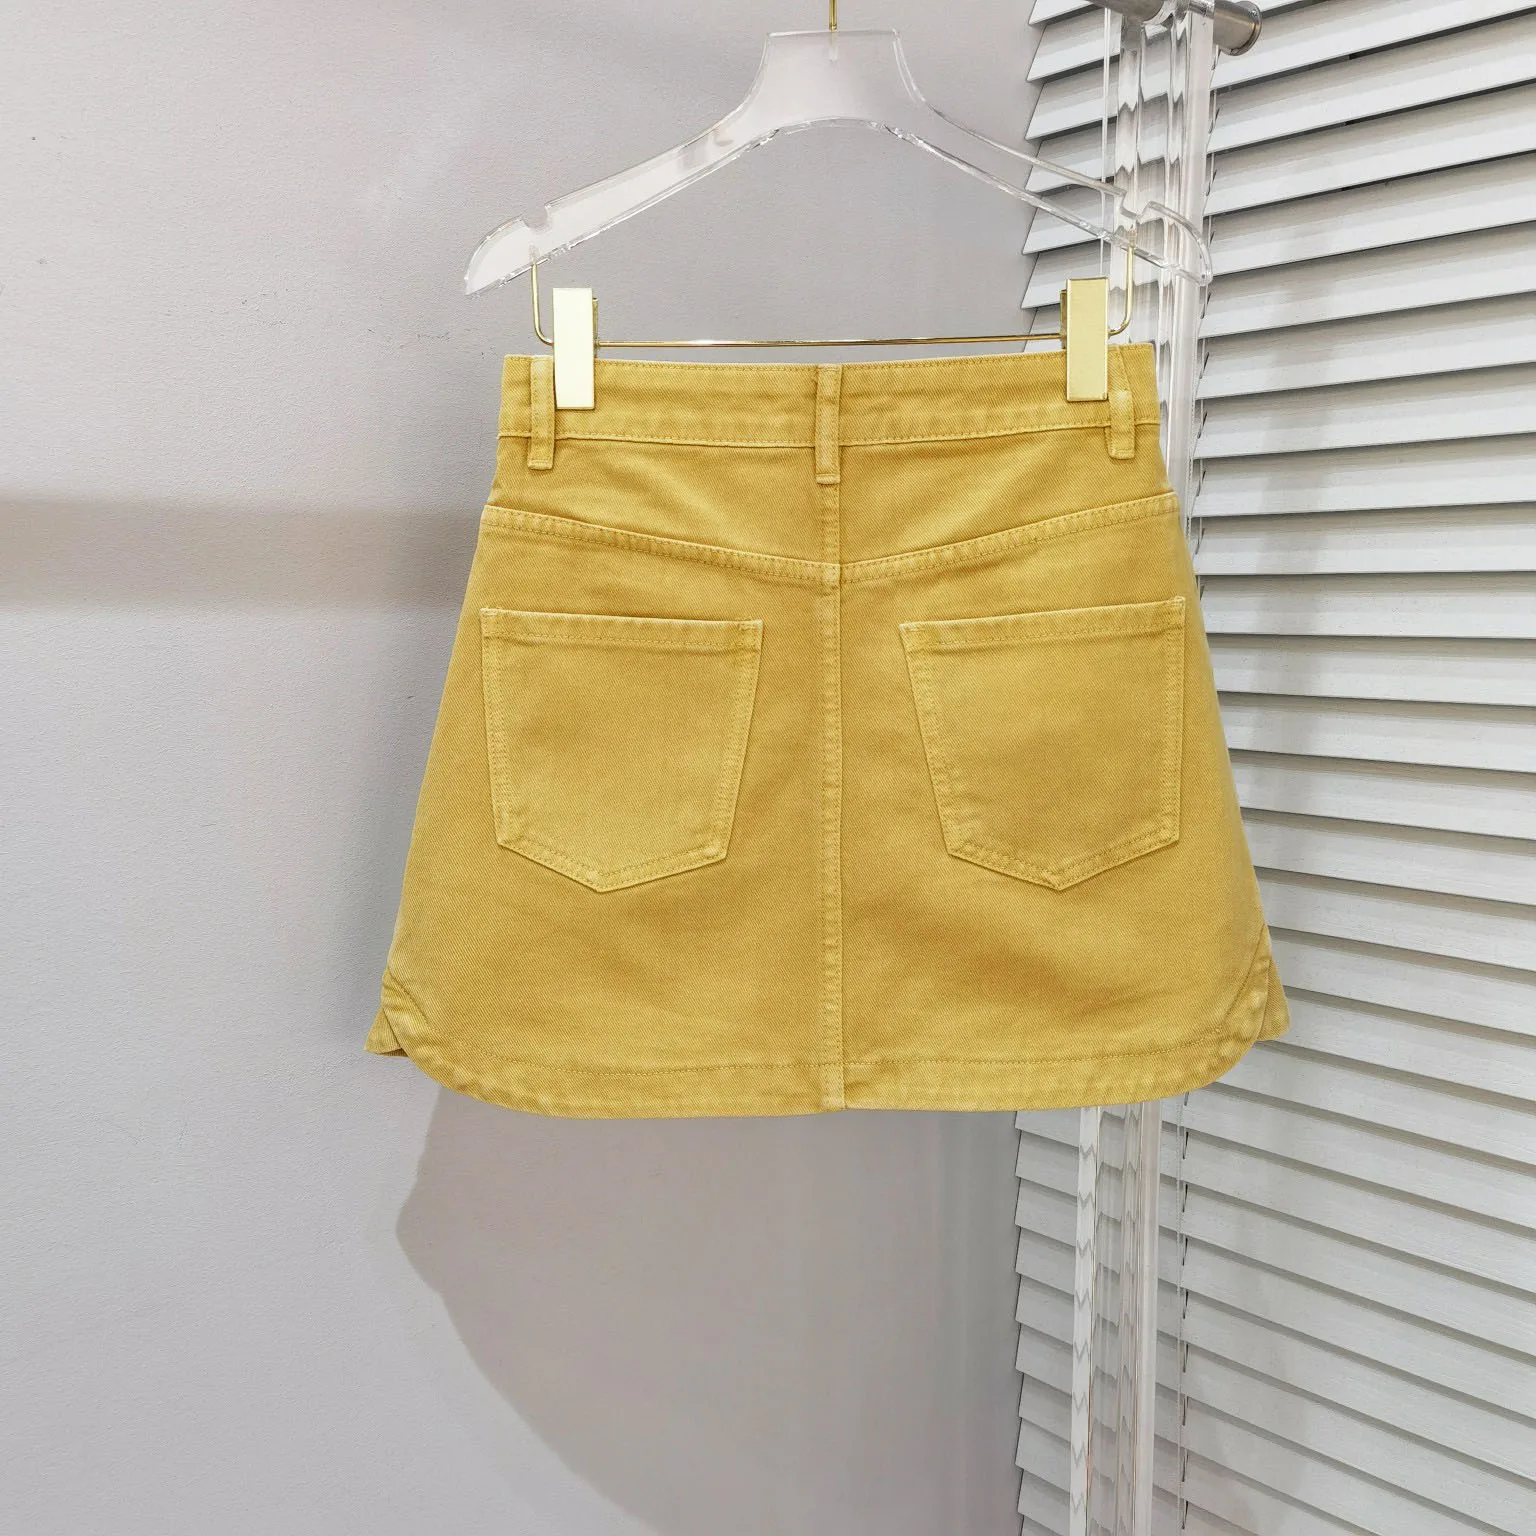 Новая желтая джинсовая юбка наполовину, дизайн поддельного кармана спереди, дизайн поддельных двух маленьких шлейфов юбки, досуг для снижения возраста . ' - ' . 1